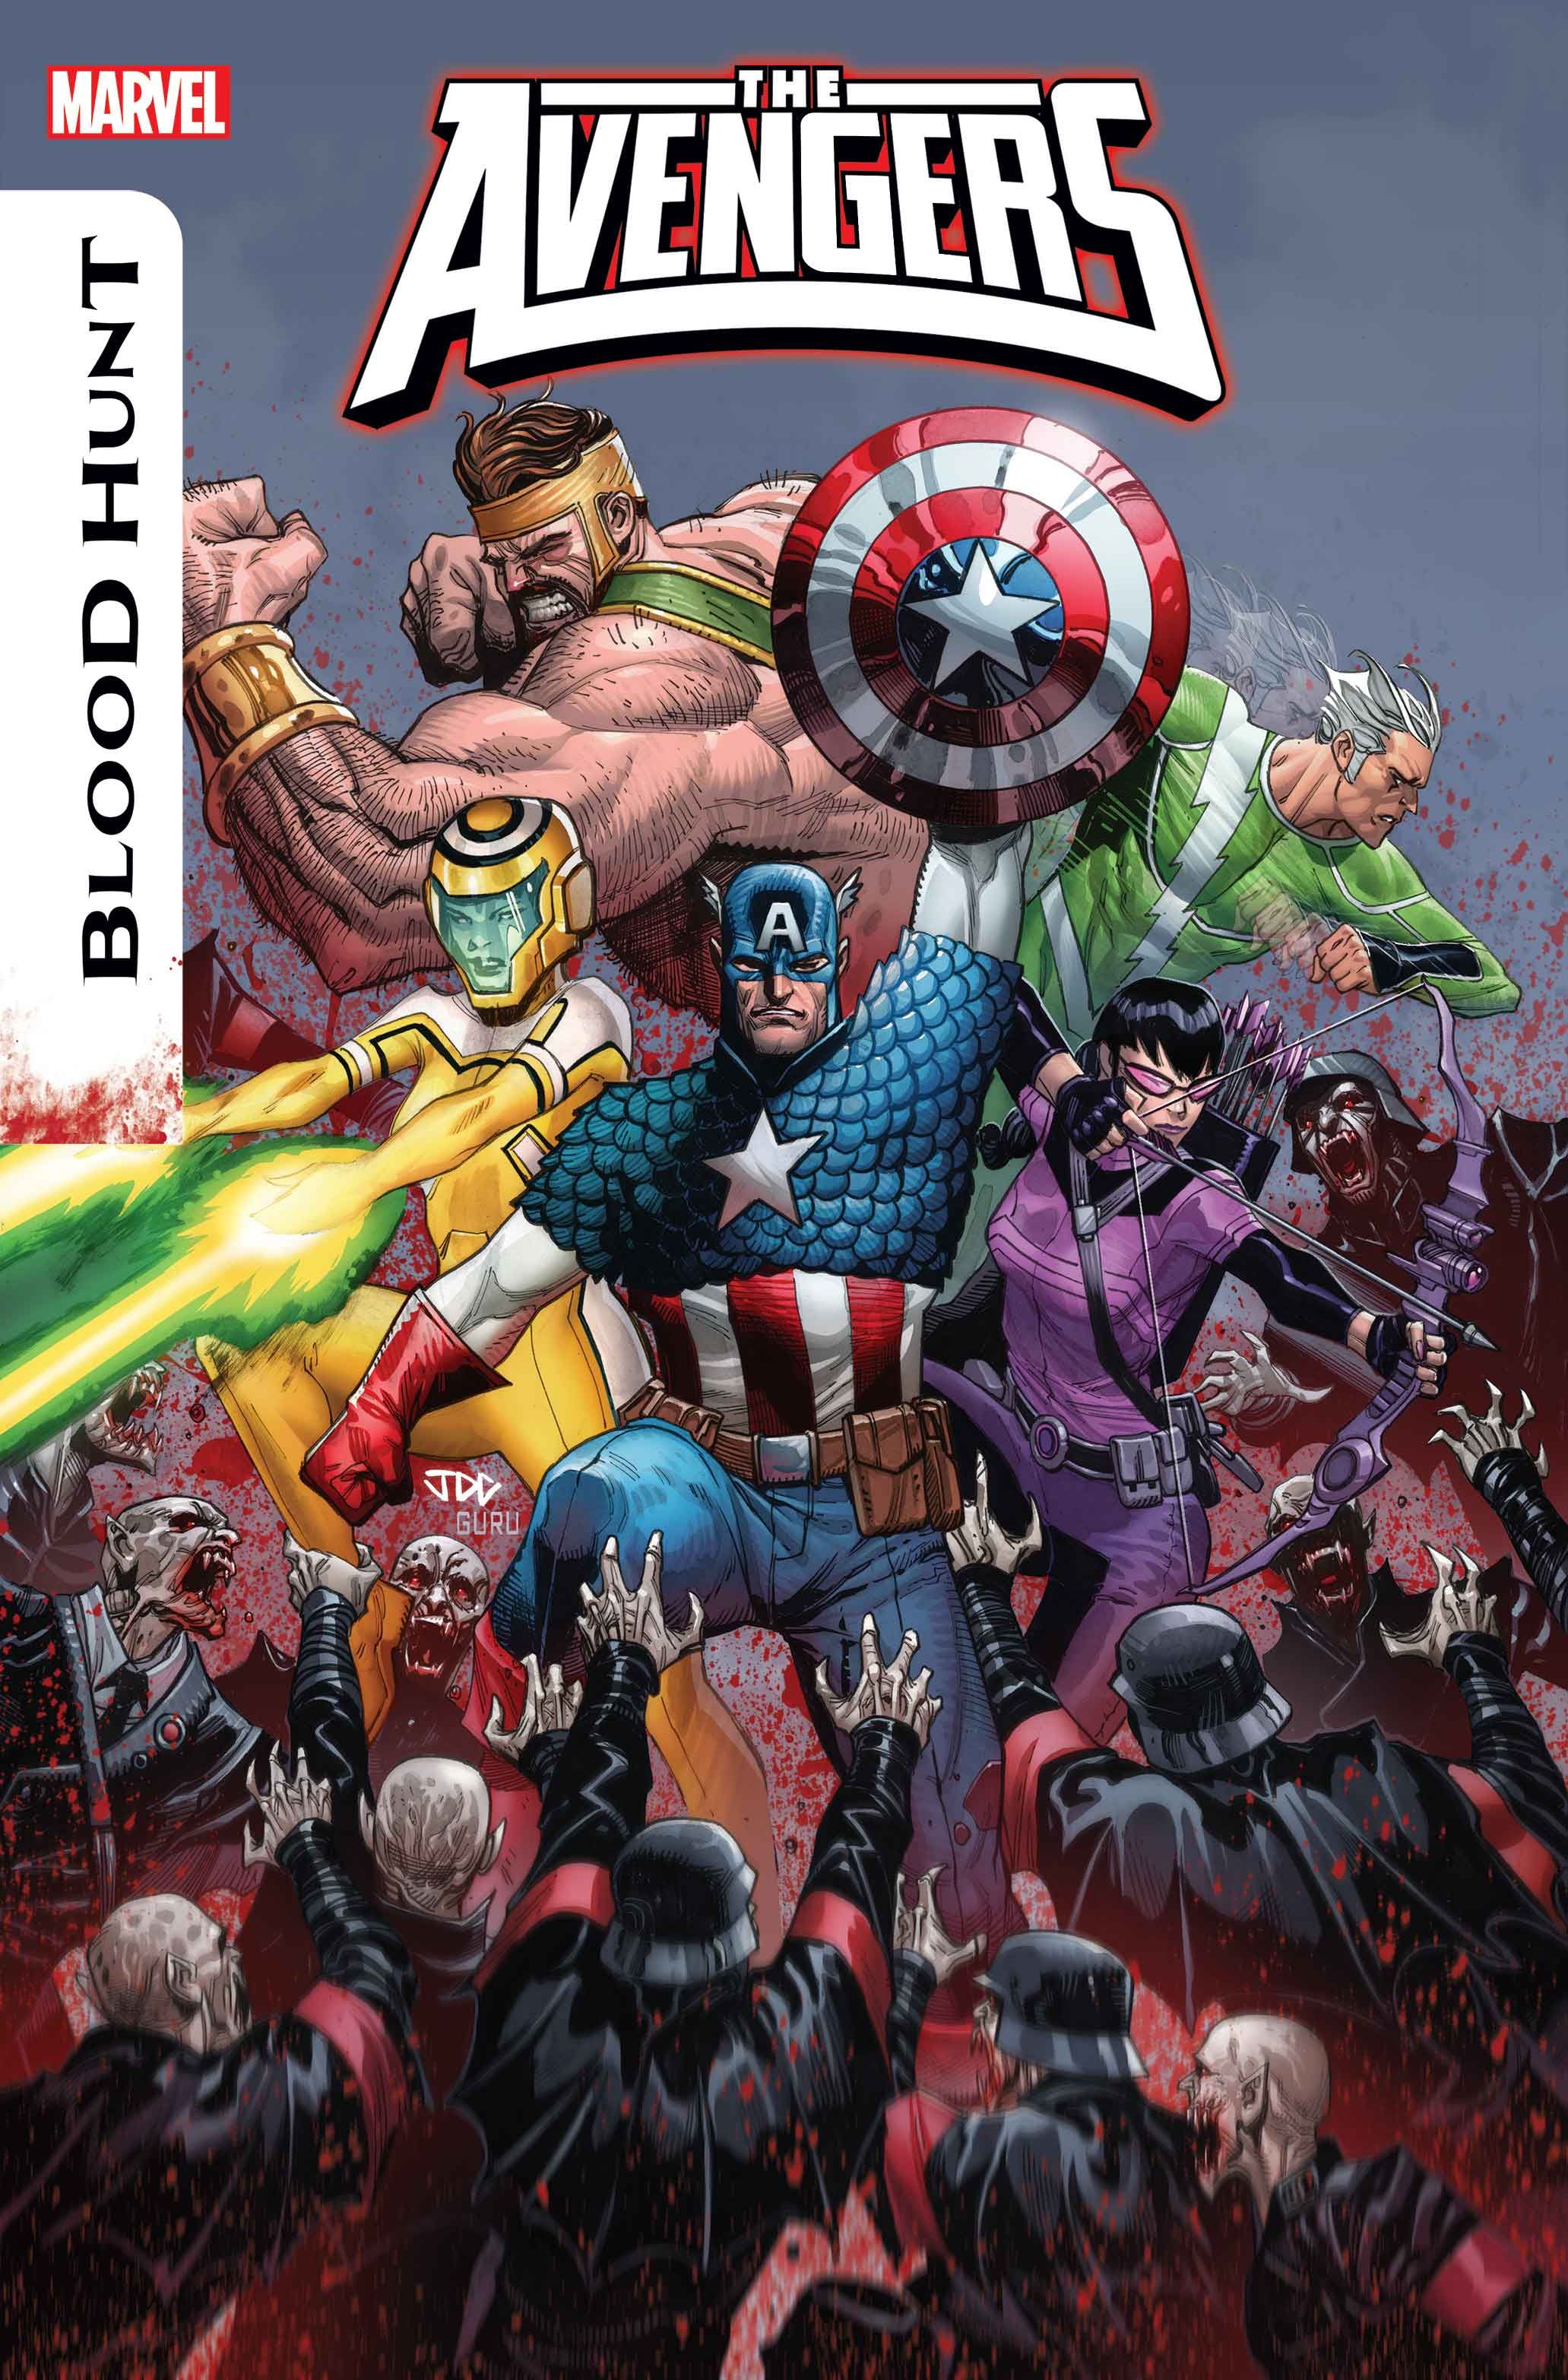 Capa dos Vingadores # 14, Capitão América, Gavião Arqueiro, Mercúrio, Hércules e Hazmat lutam contra vampiros durante BLOOD HUNT